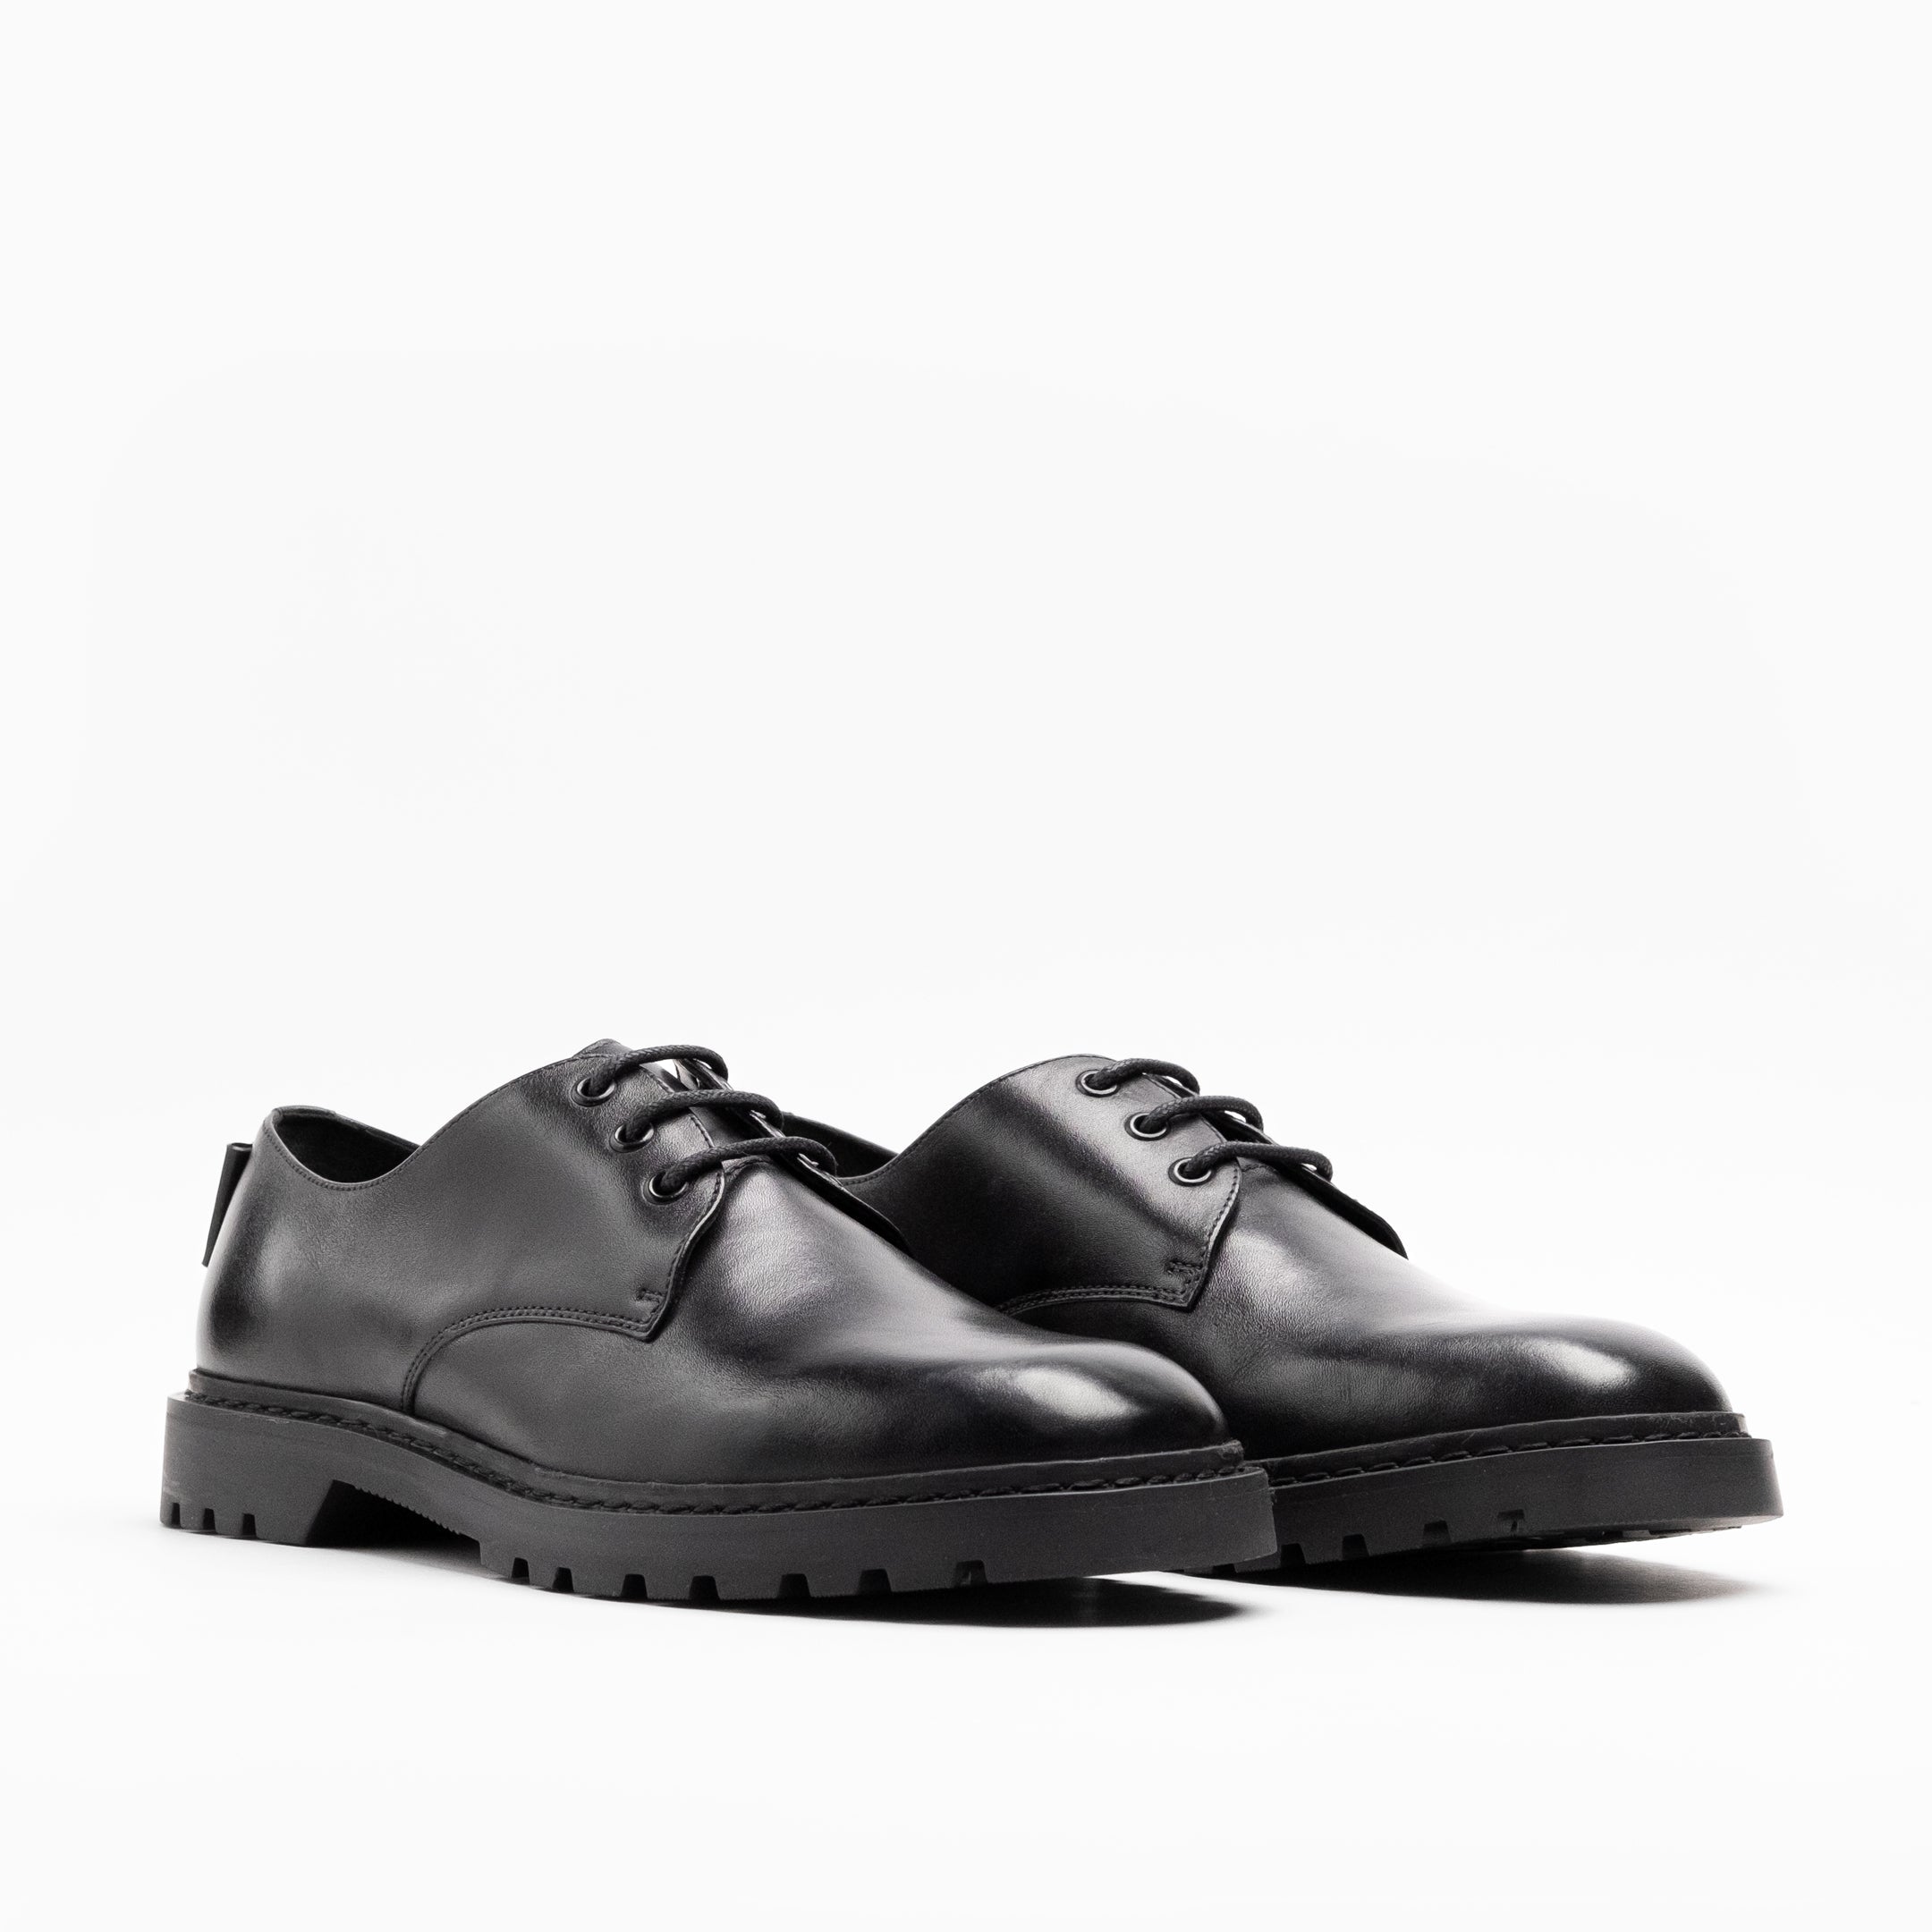 Walk London Mens Milano Derby Shoe in Black Leather